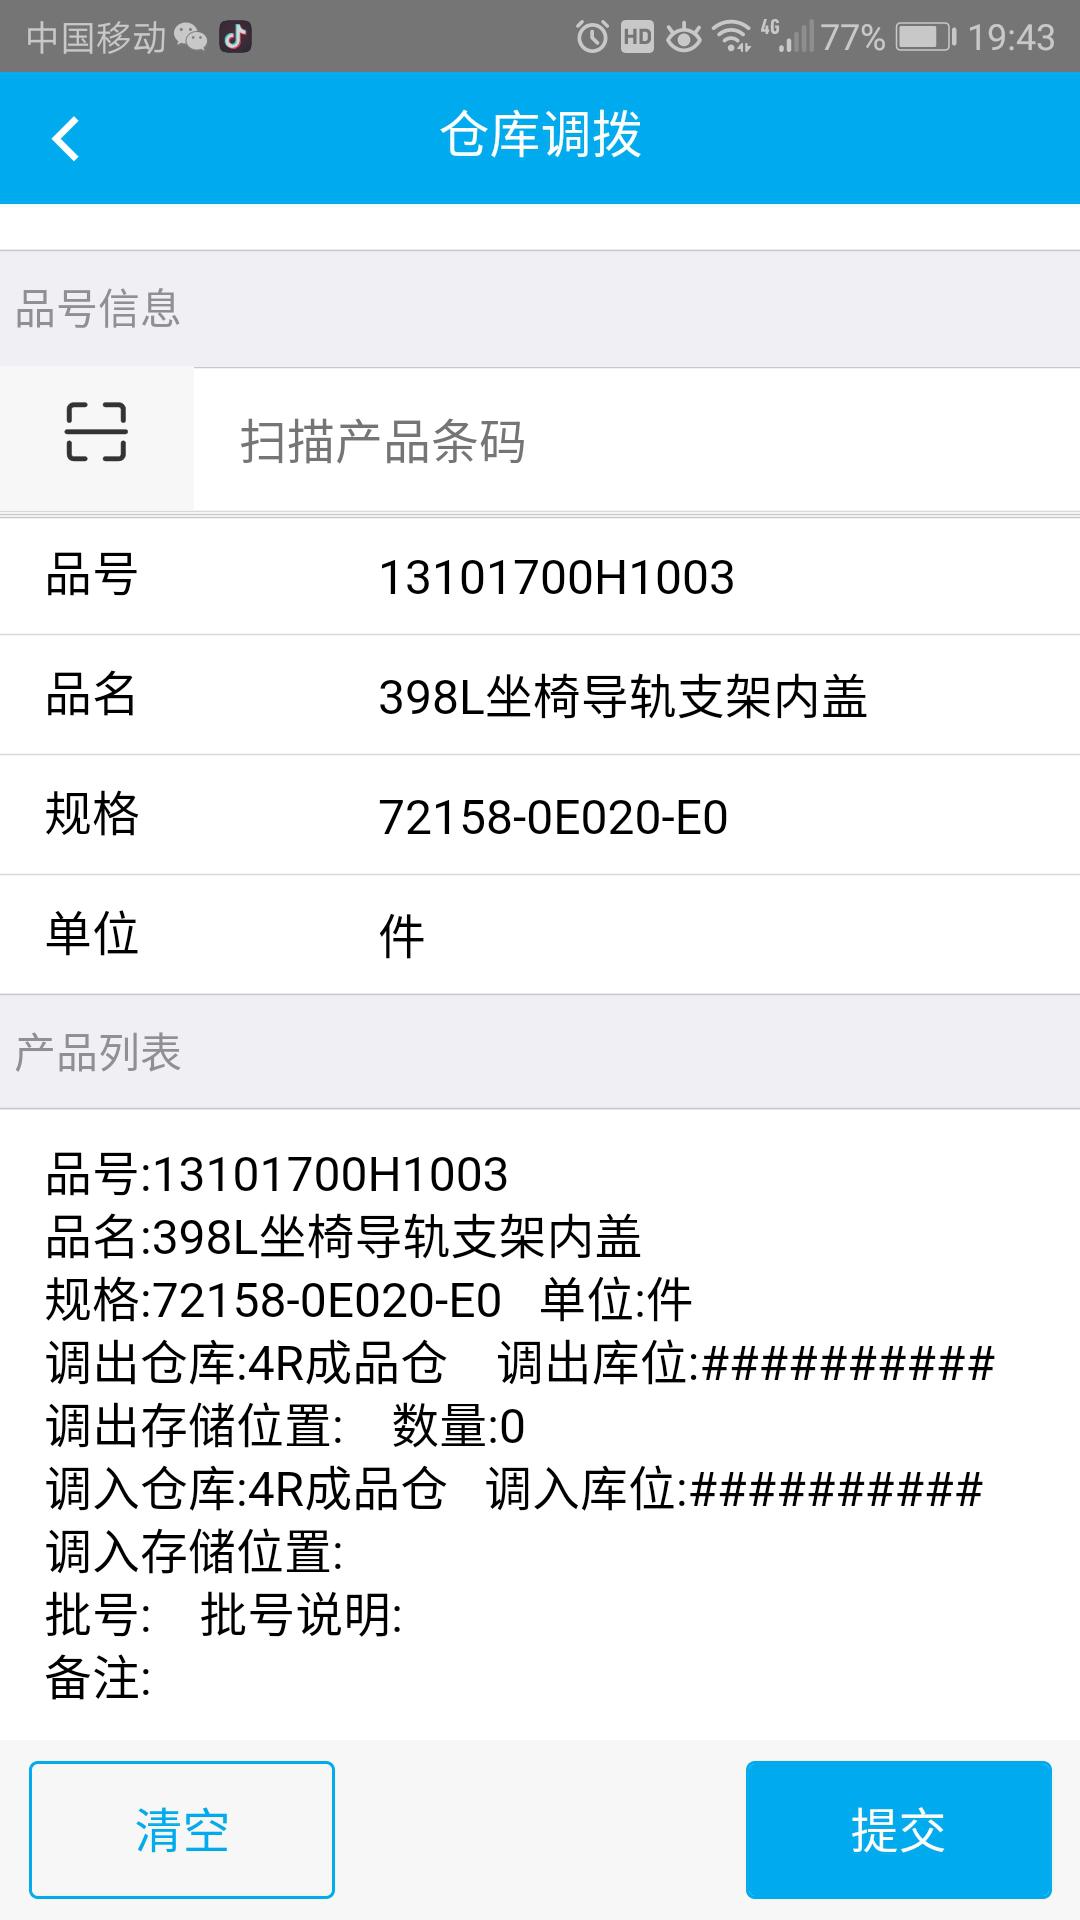 广州维高集团有限公司--鼎捷易飞ERP条码集成移动应用解决方案